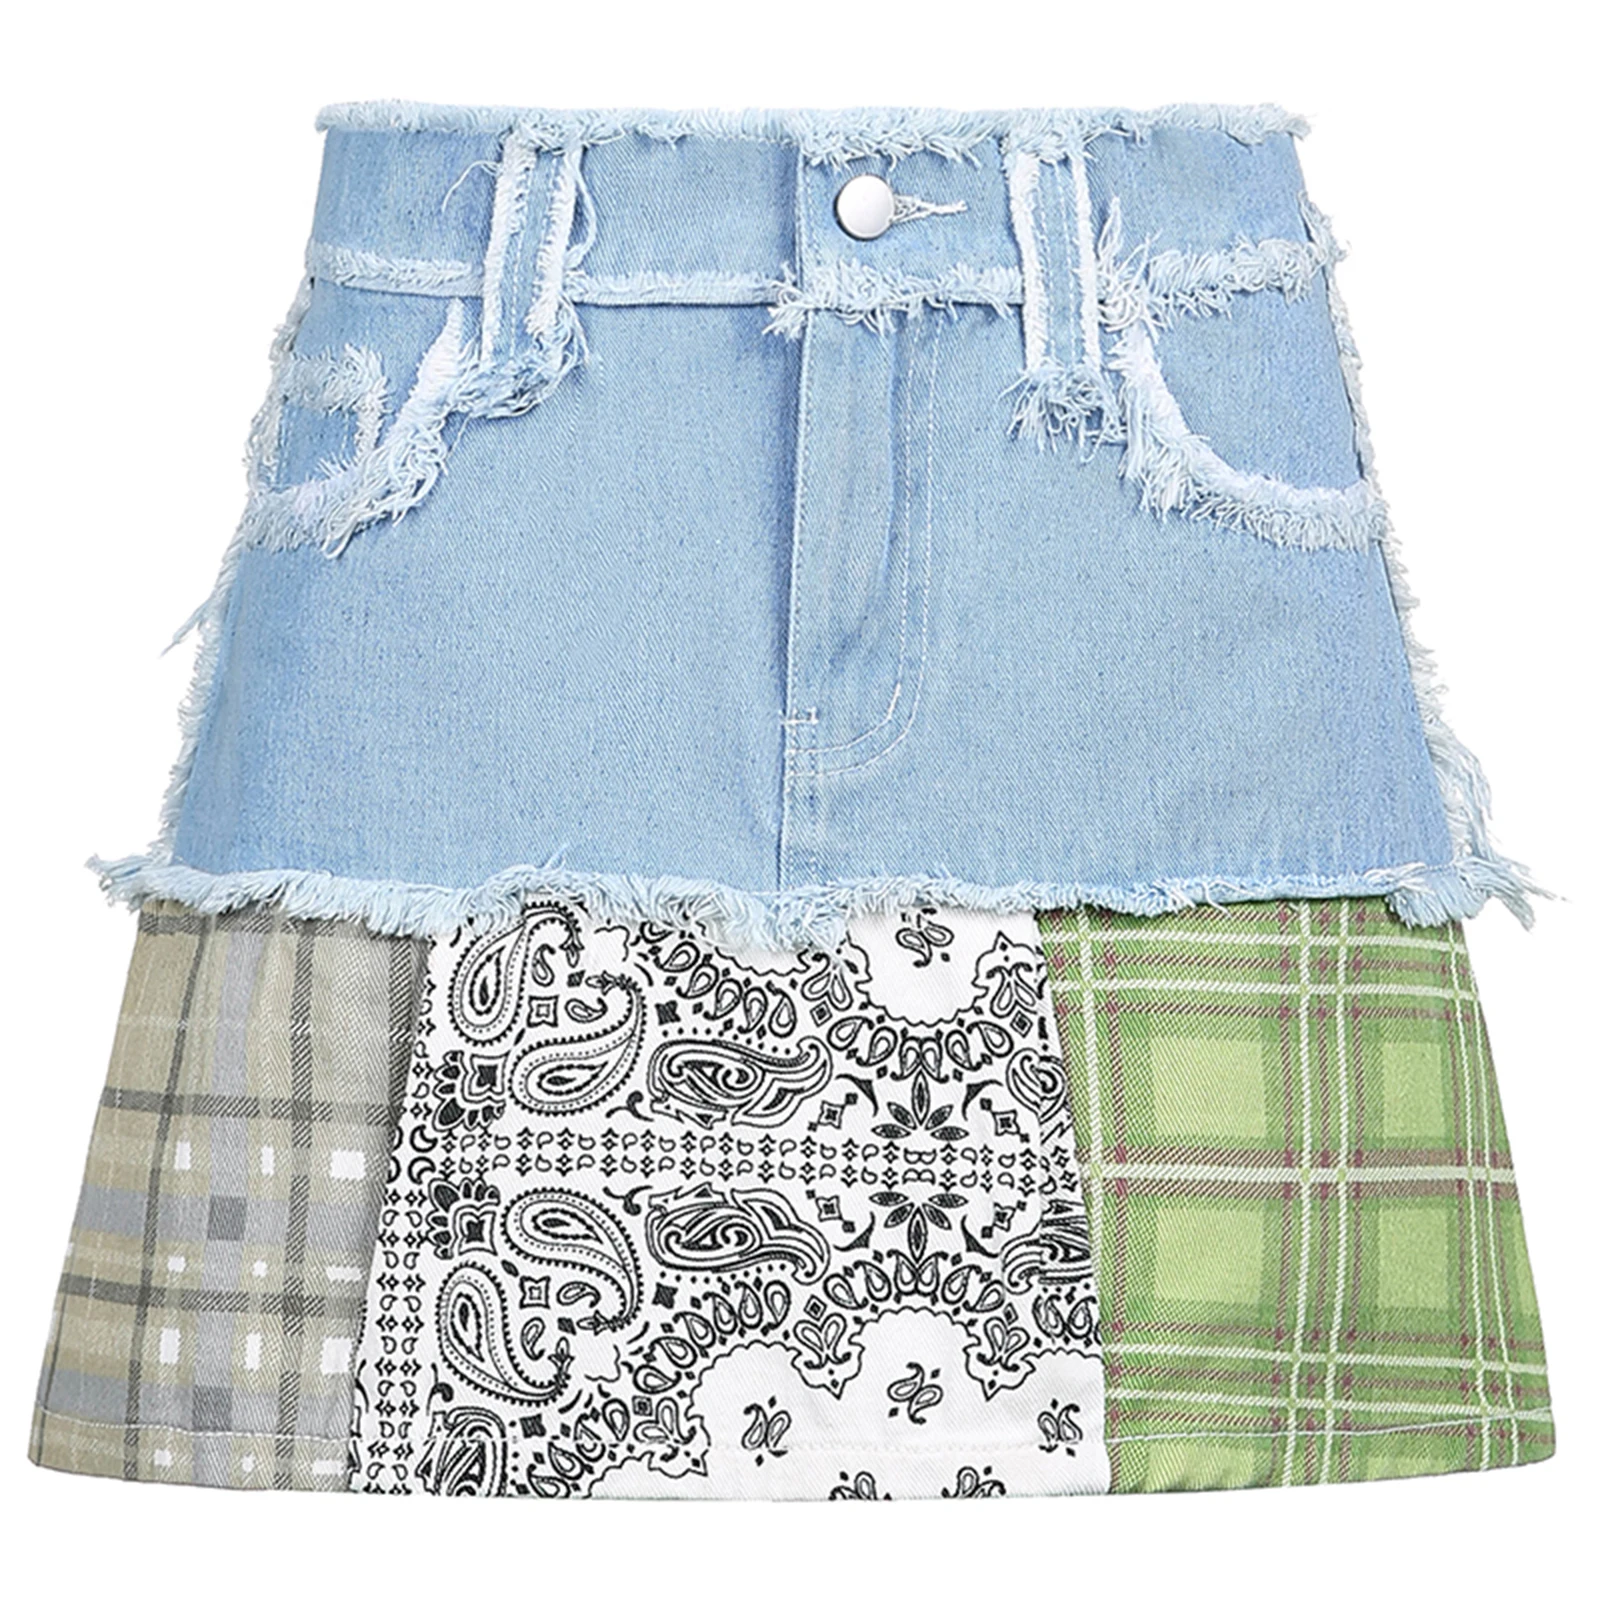 

Women Summer Miniskirt, Plaid Splicing High-Waist Frayed Denim Skirt with Pockets for Girls, Green